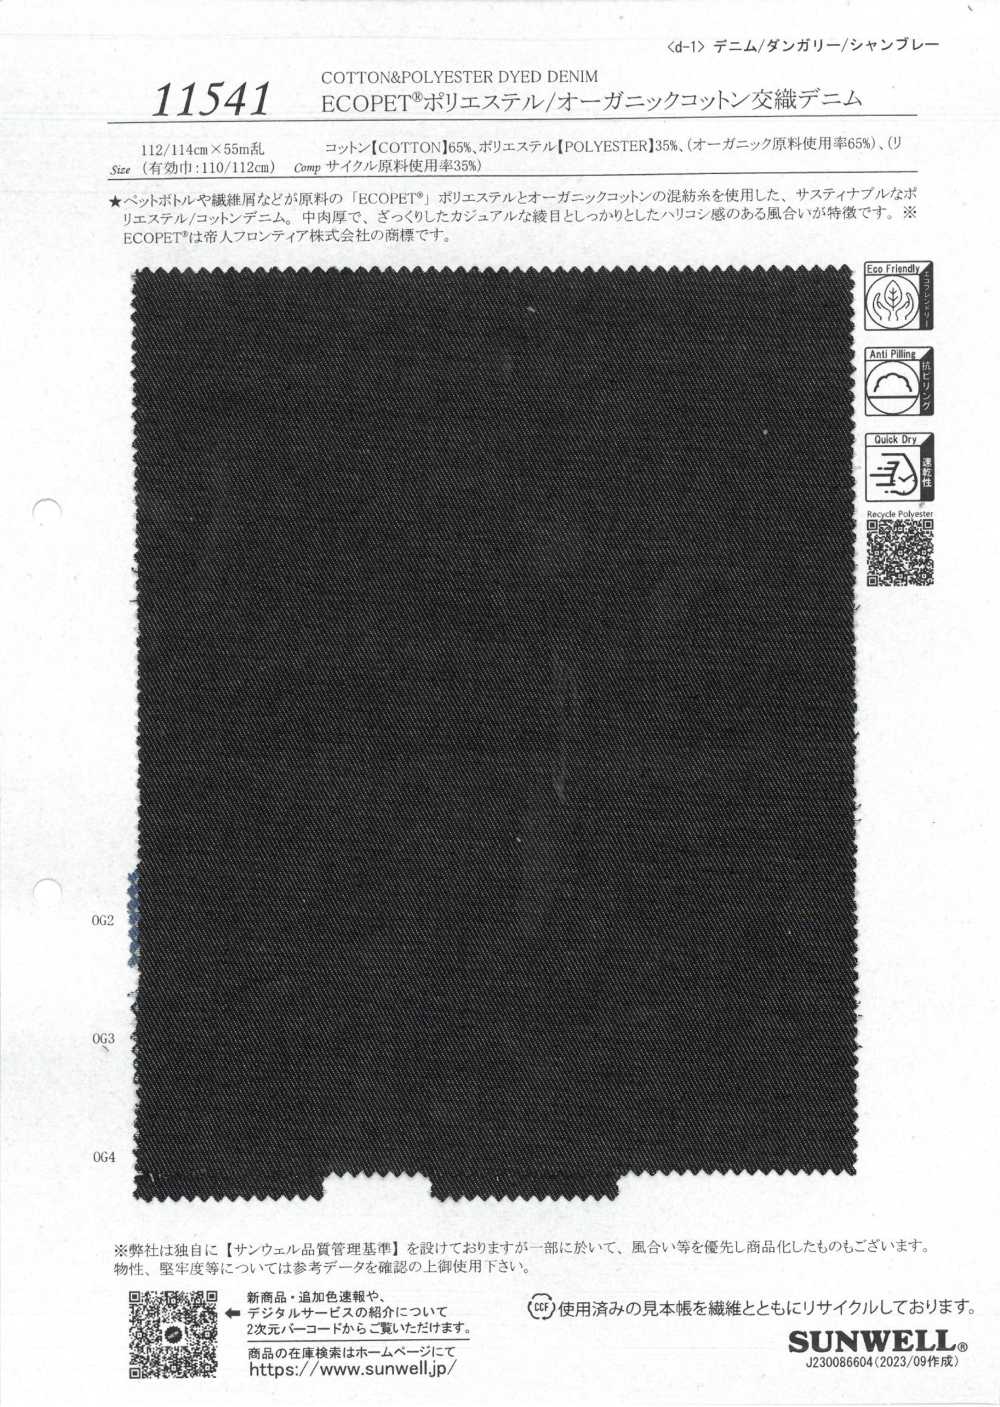 11541 ECOPET® Polyester/Bio-Baumwoll-Misch-Denim[Textilgewebe] SUNWELL